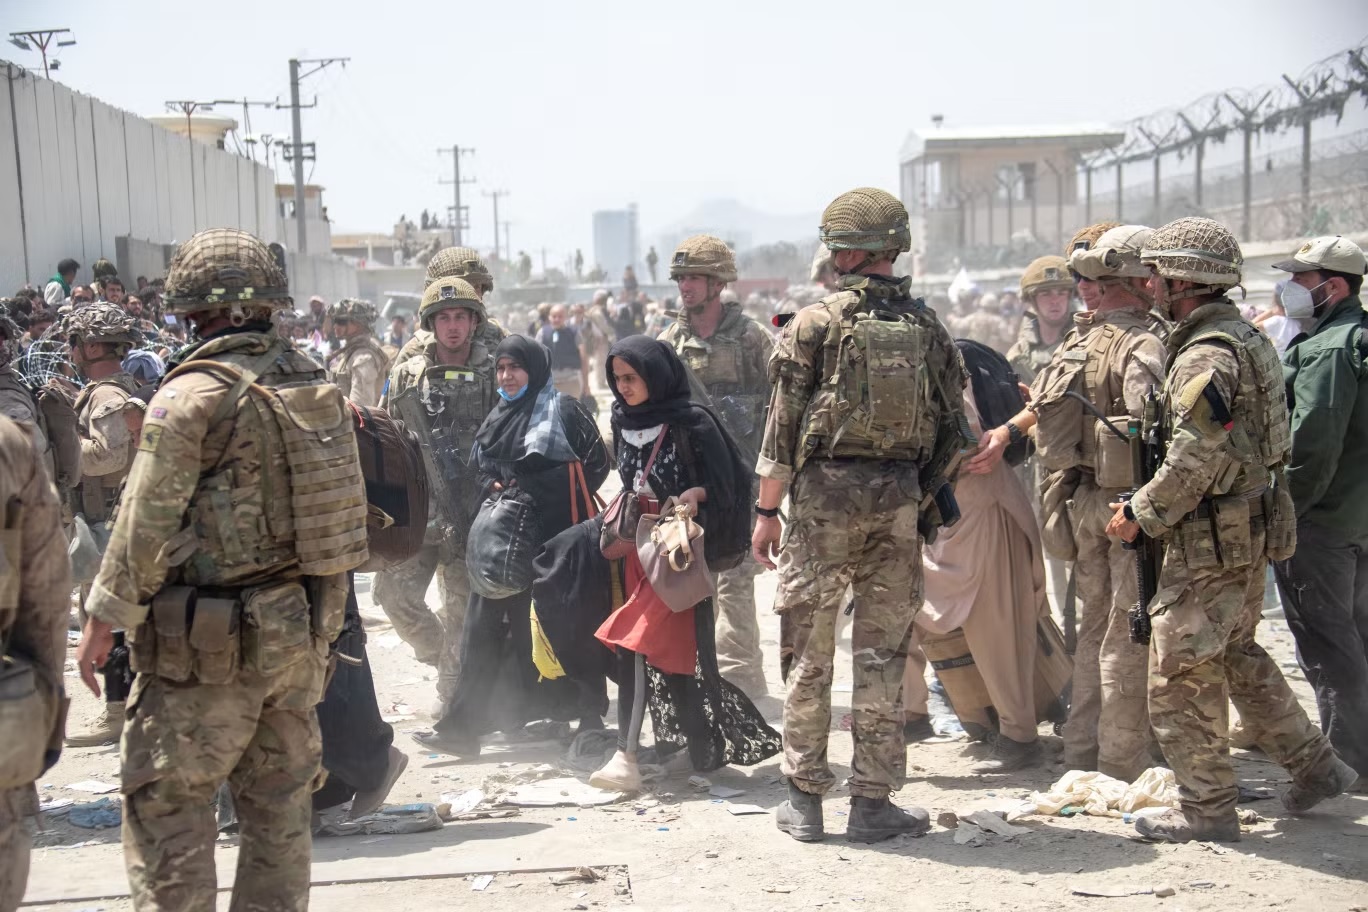 القوات المسلحة البريطانية تقوم مع الجيش الأميركي بإجلاء المدنيين المؤهلين وعائلاتهم من كابول في أغسطس 2021 (وزارة الدفاع البريطانية/ غيتي)